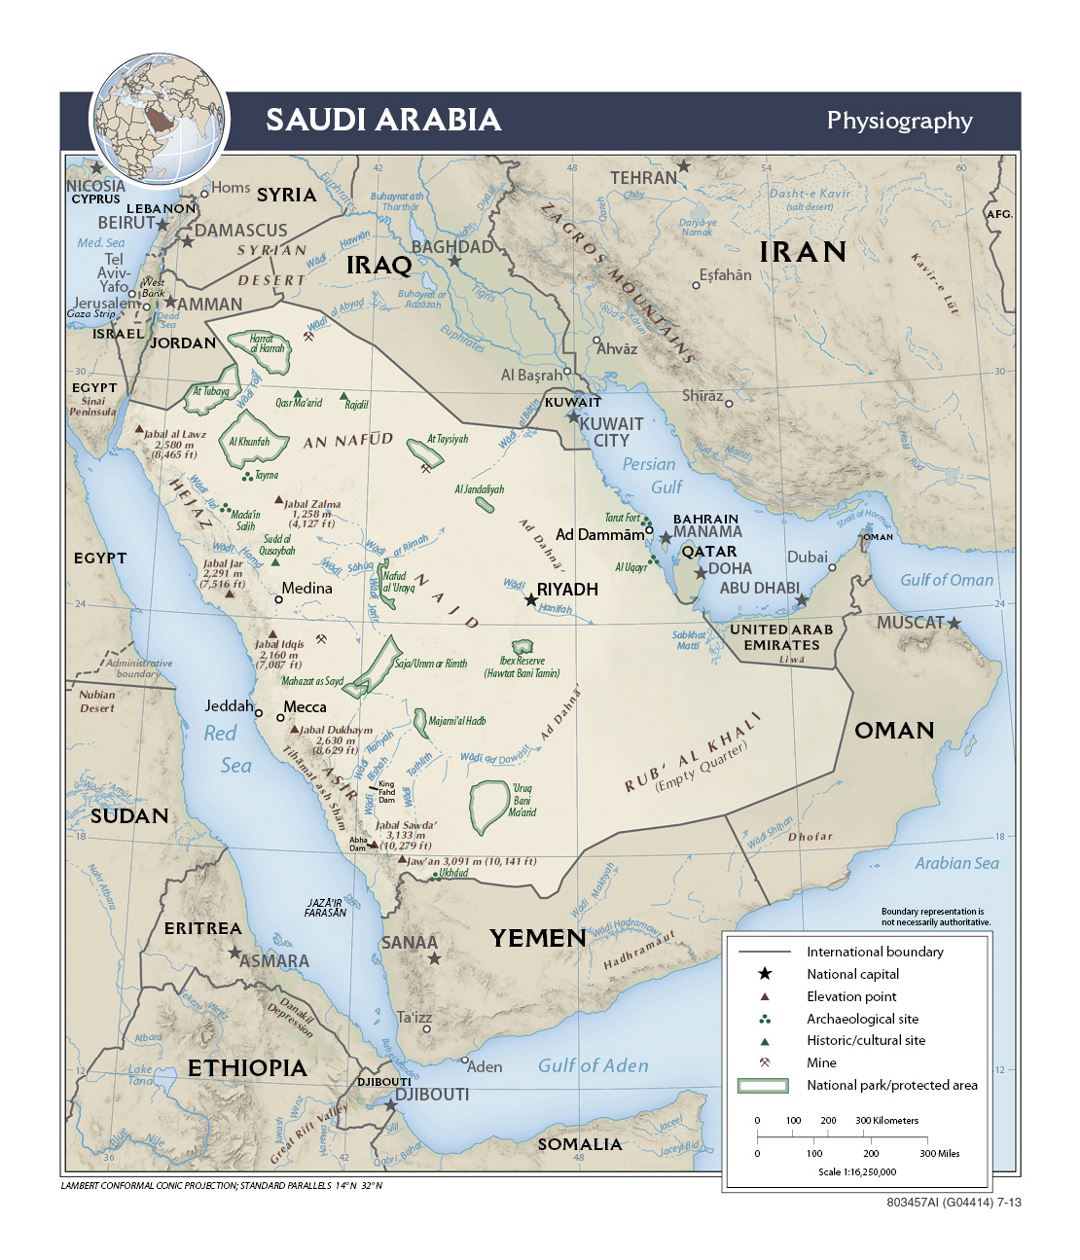 Detallado mapa de fisiografía de Arabia Saudita - 2013